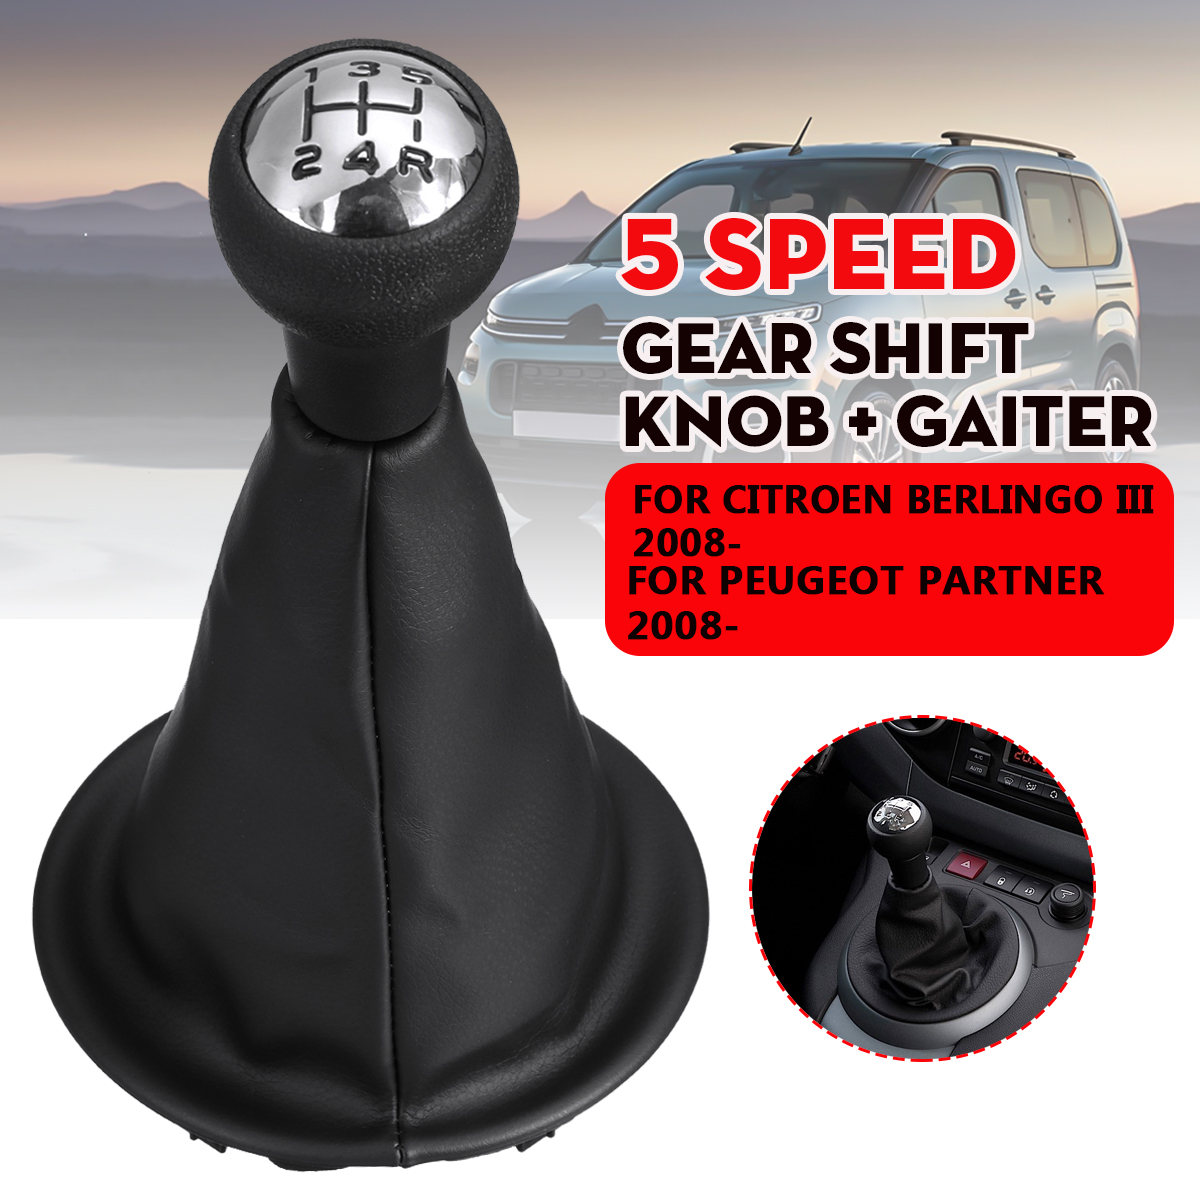 5-Speed-Gear-Shift-Knob--Gaiter-for-Citroen-Berlingo-III-for-Peugeot-Partner-2008-1776327-1